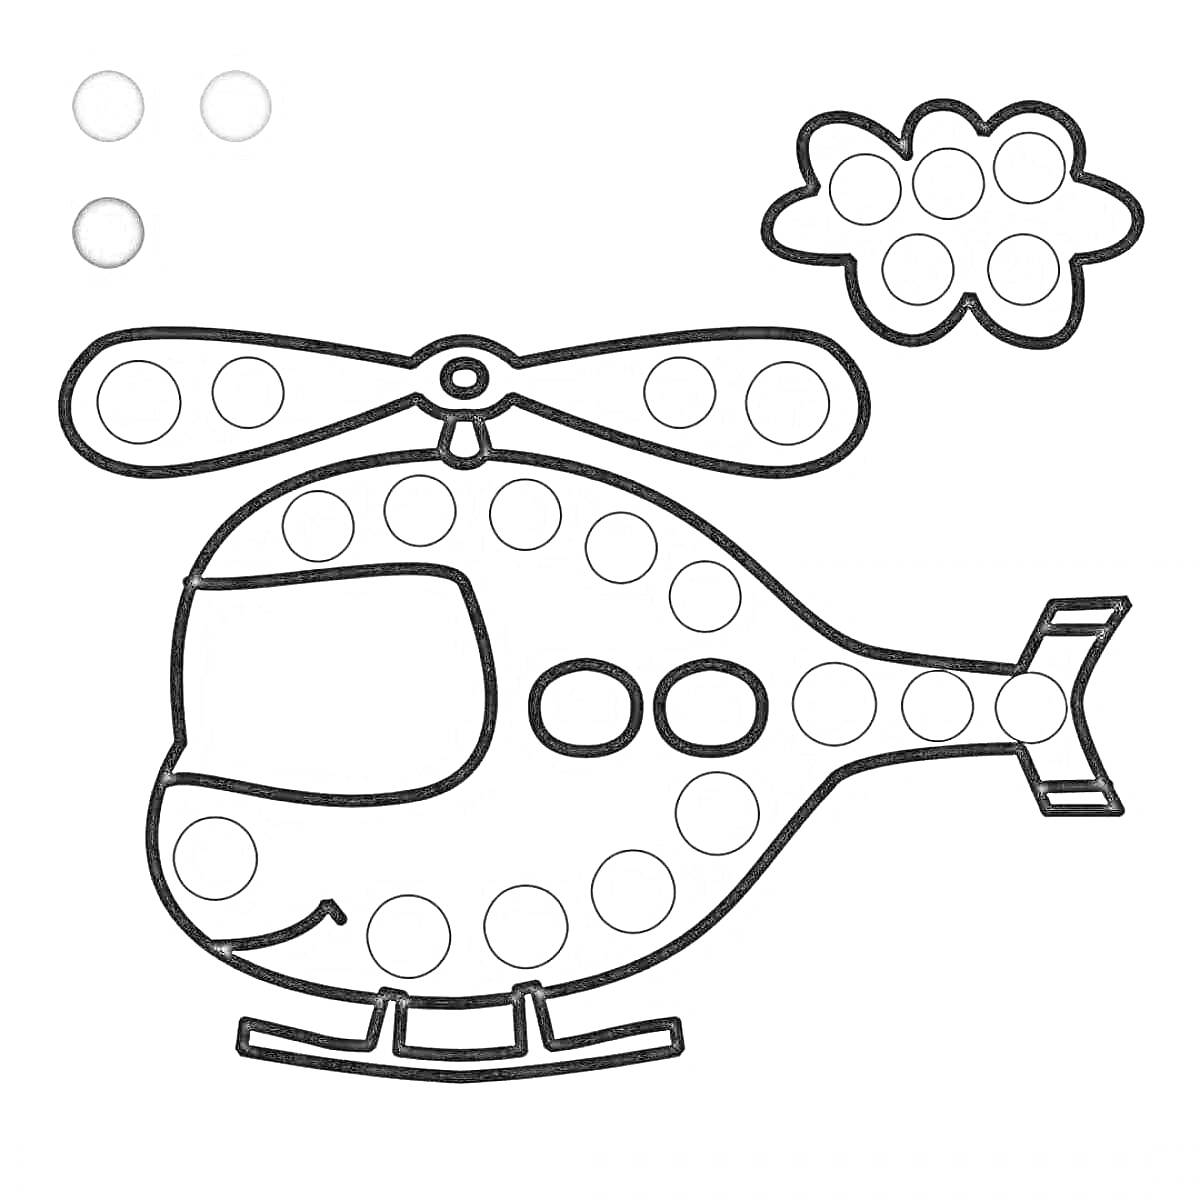 Раскраска Вертолет с пропеллером и облаком, раскраска с круглыми отверстиями для пластилина